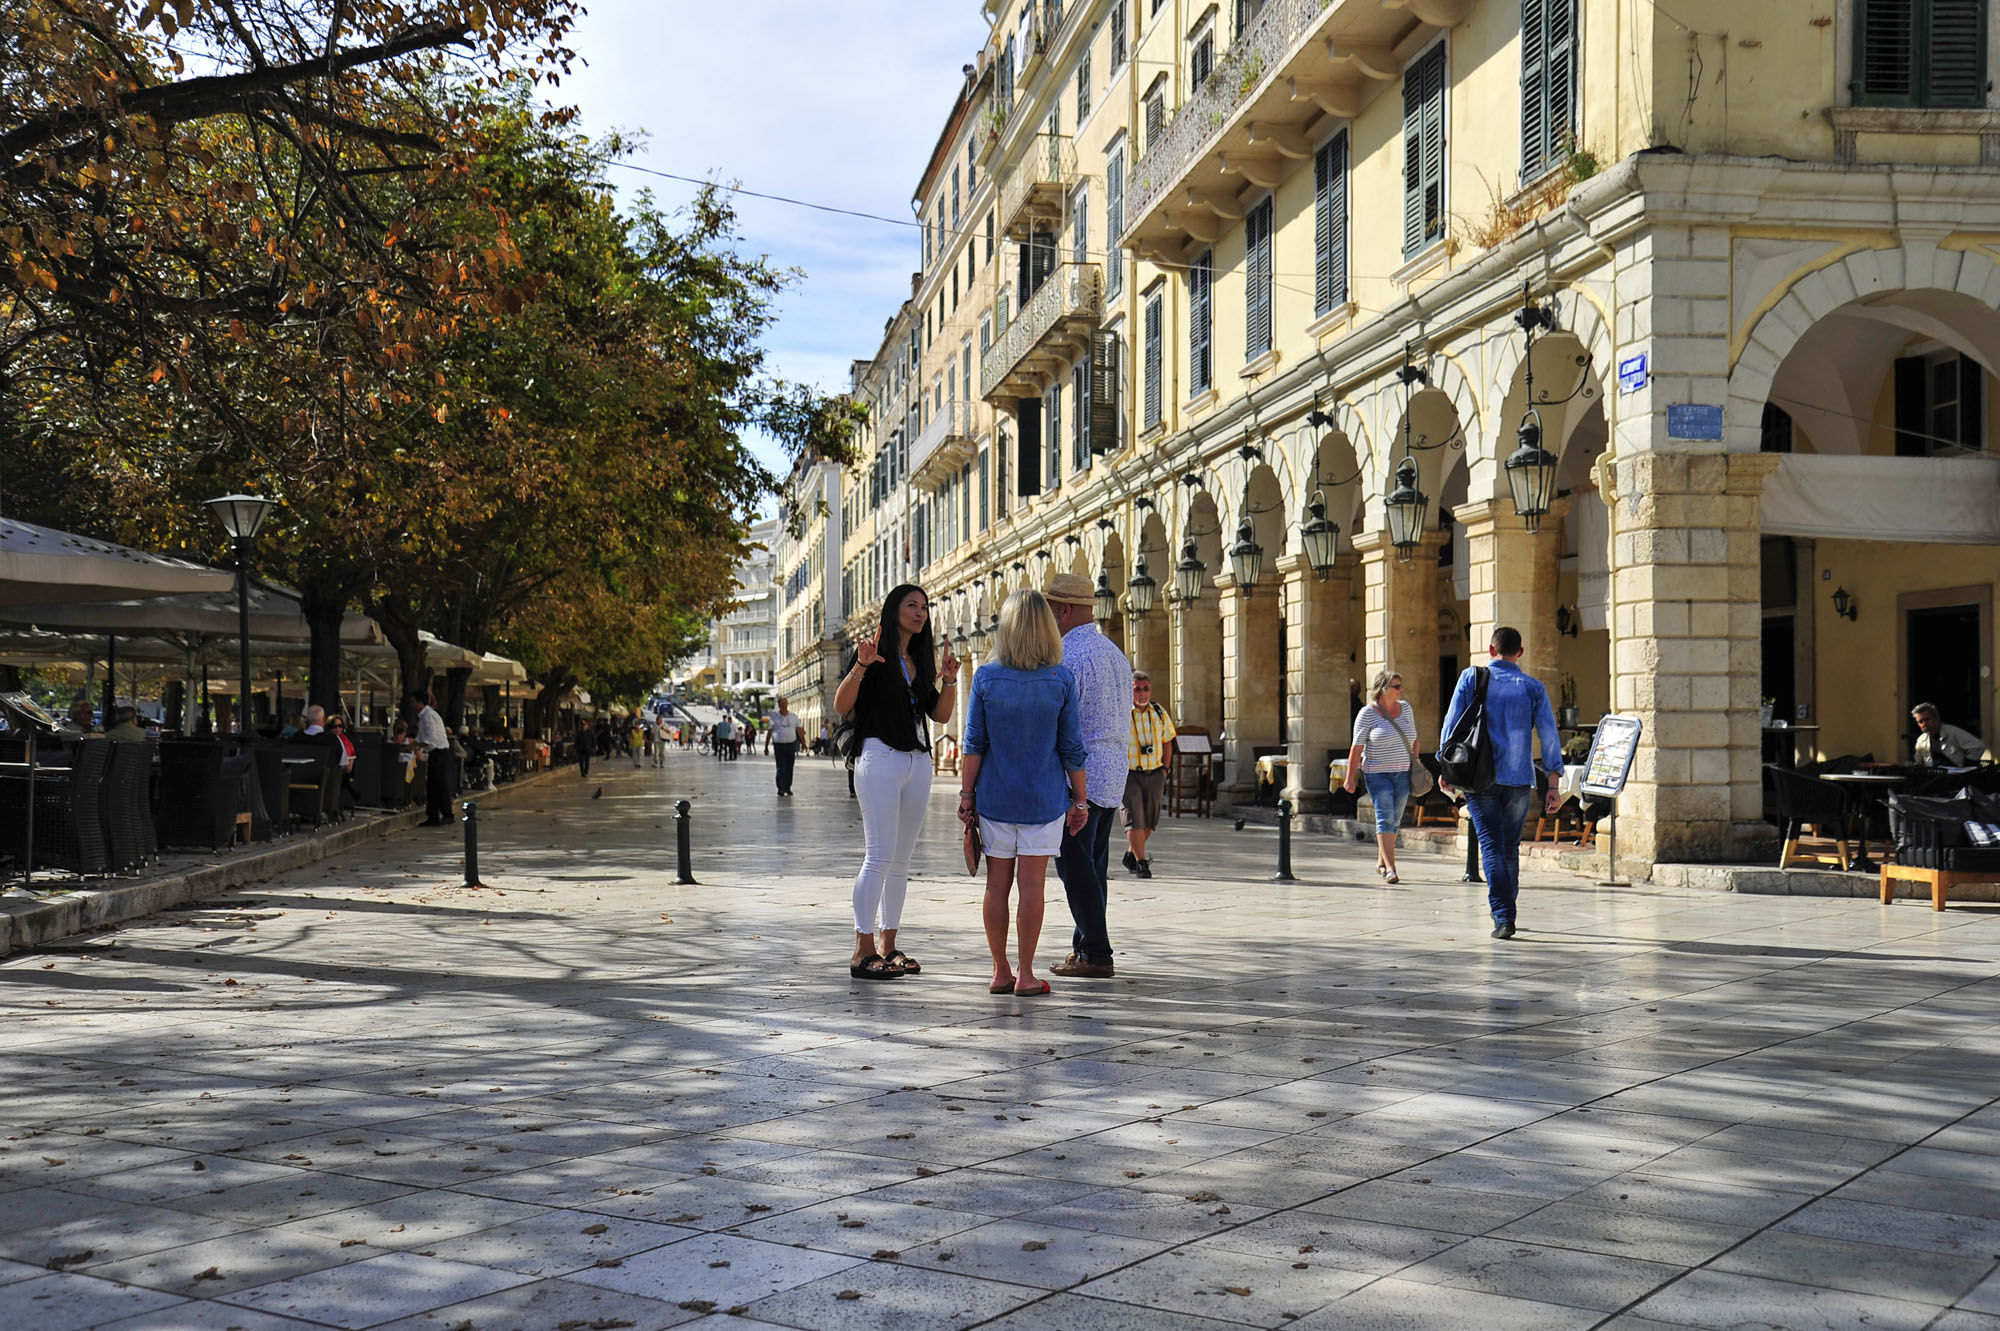 Corfu Historical Walking Tour